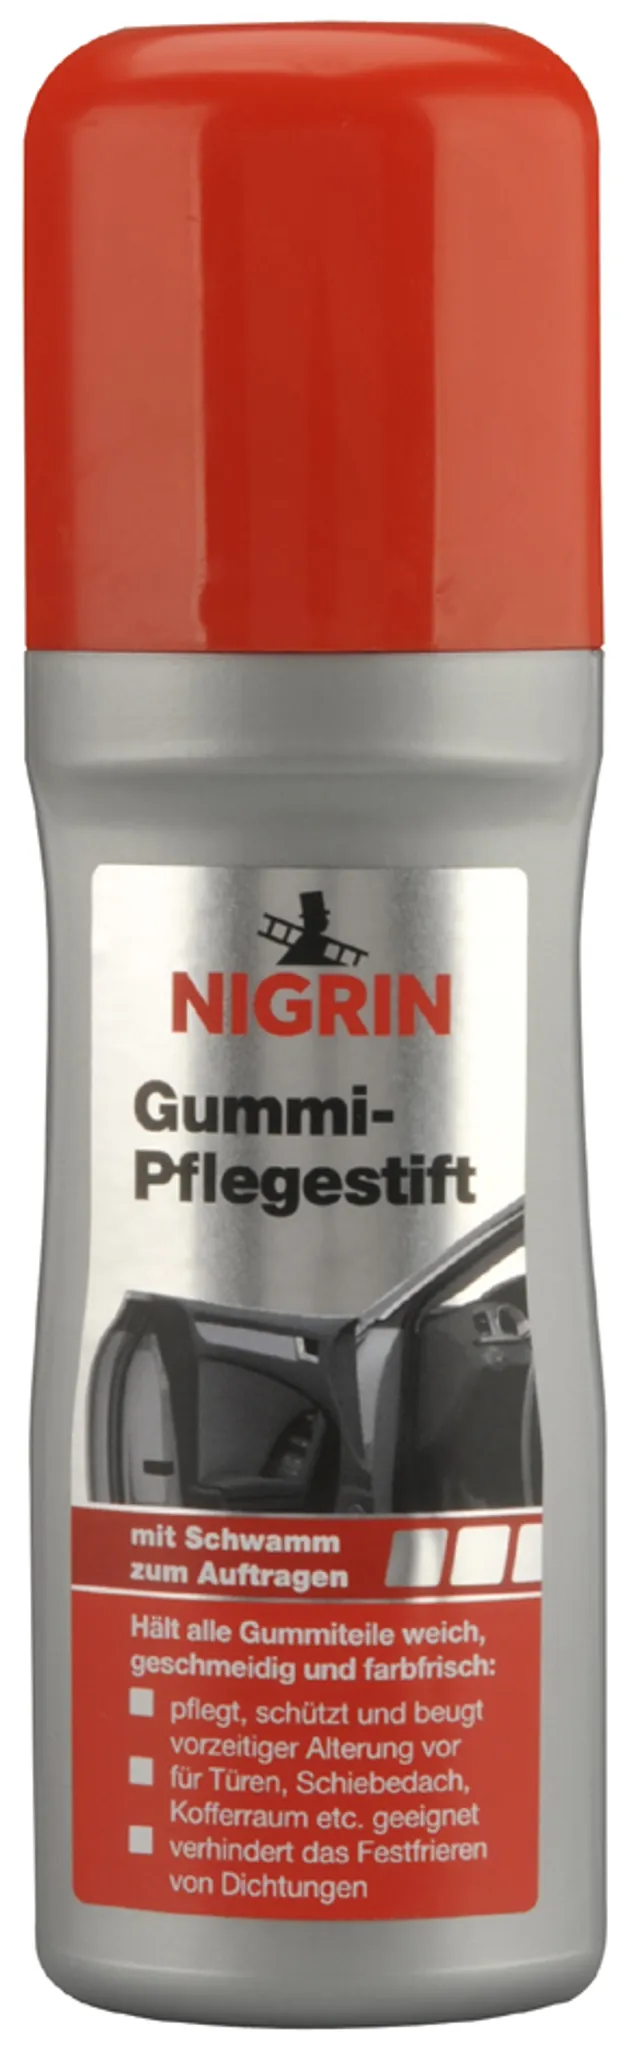 NIGRIN Gummi-Pflegestift 75 ml Gummipflege